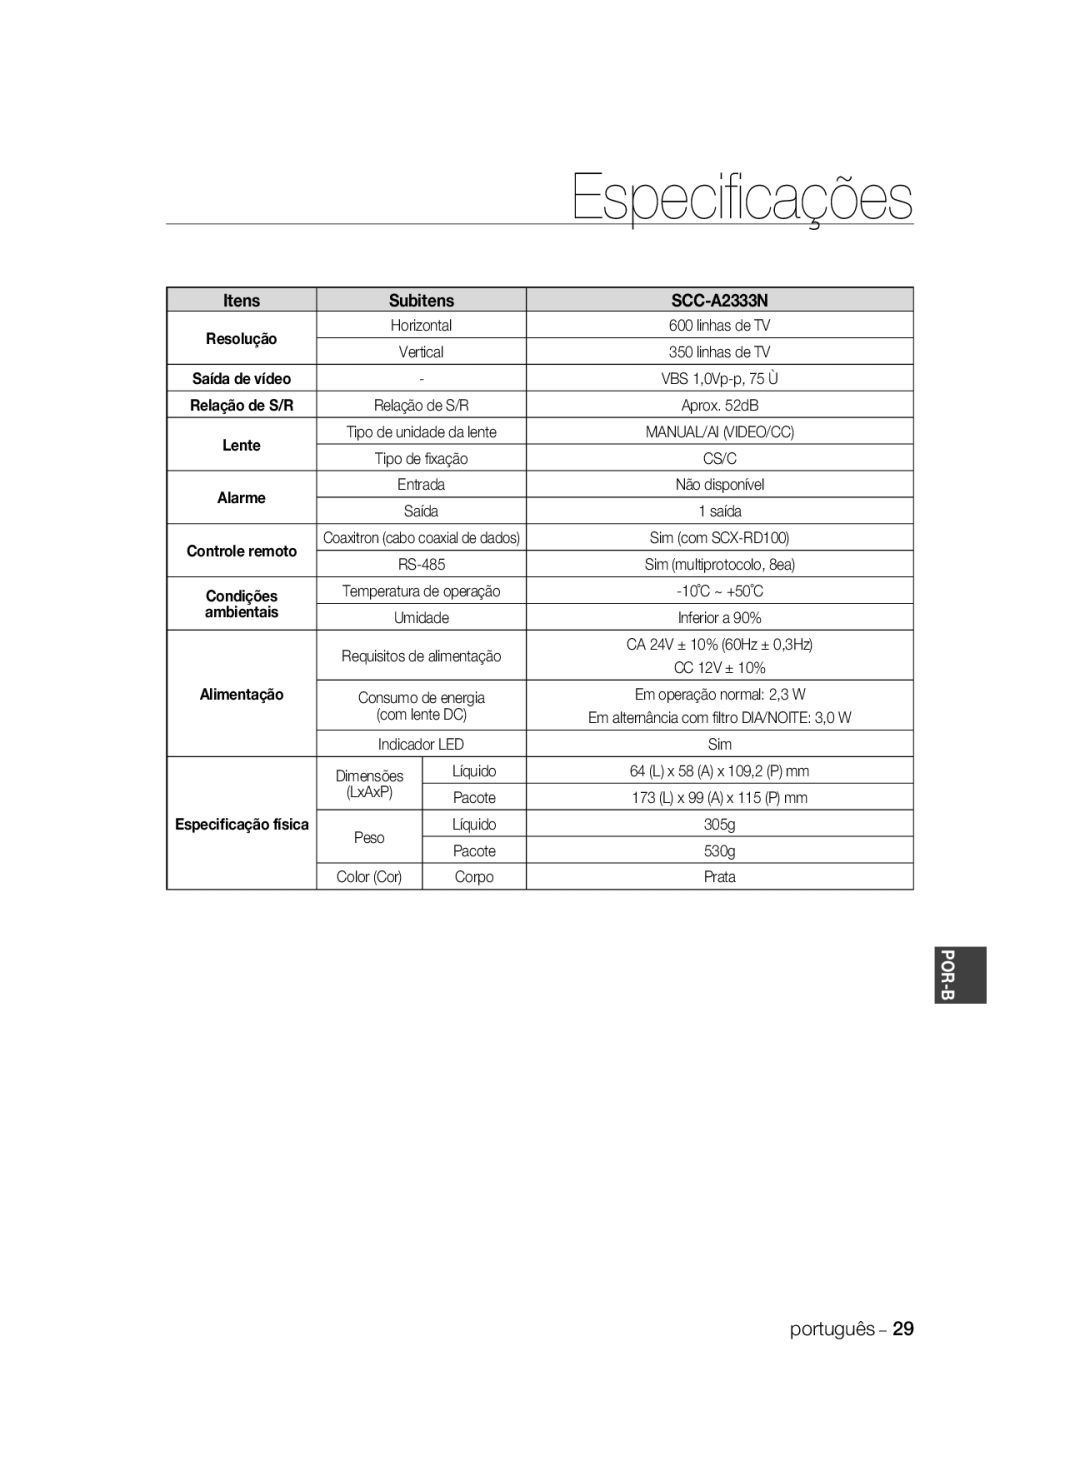 Samsung SCC-A2033P, SCC-A2333P manual Especiﬁcações, Itens, SCC-A2333N, ambientais, Alimentação, Por-B 